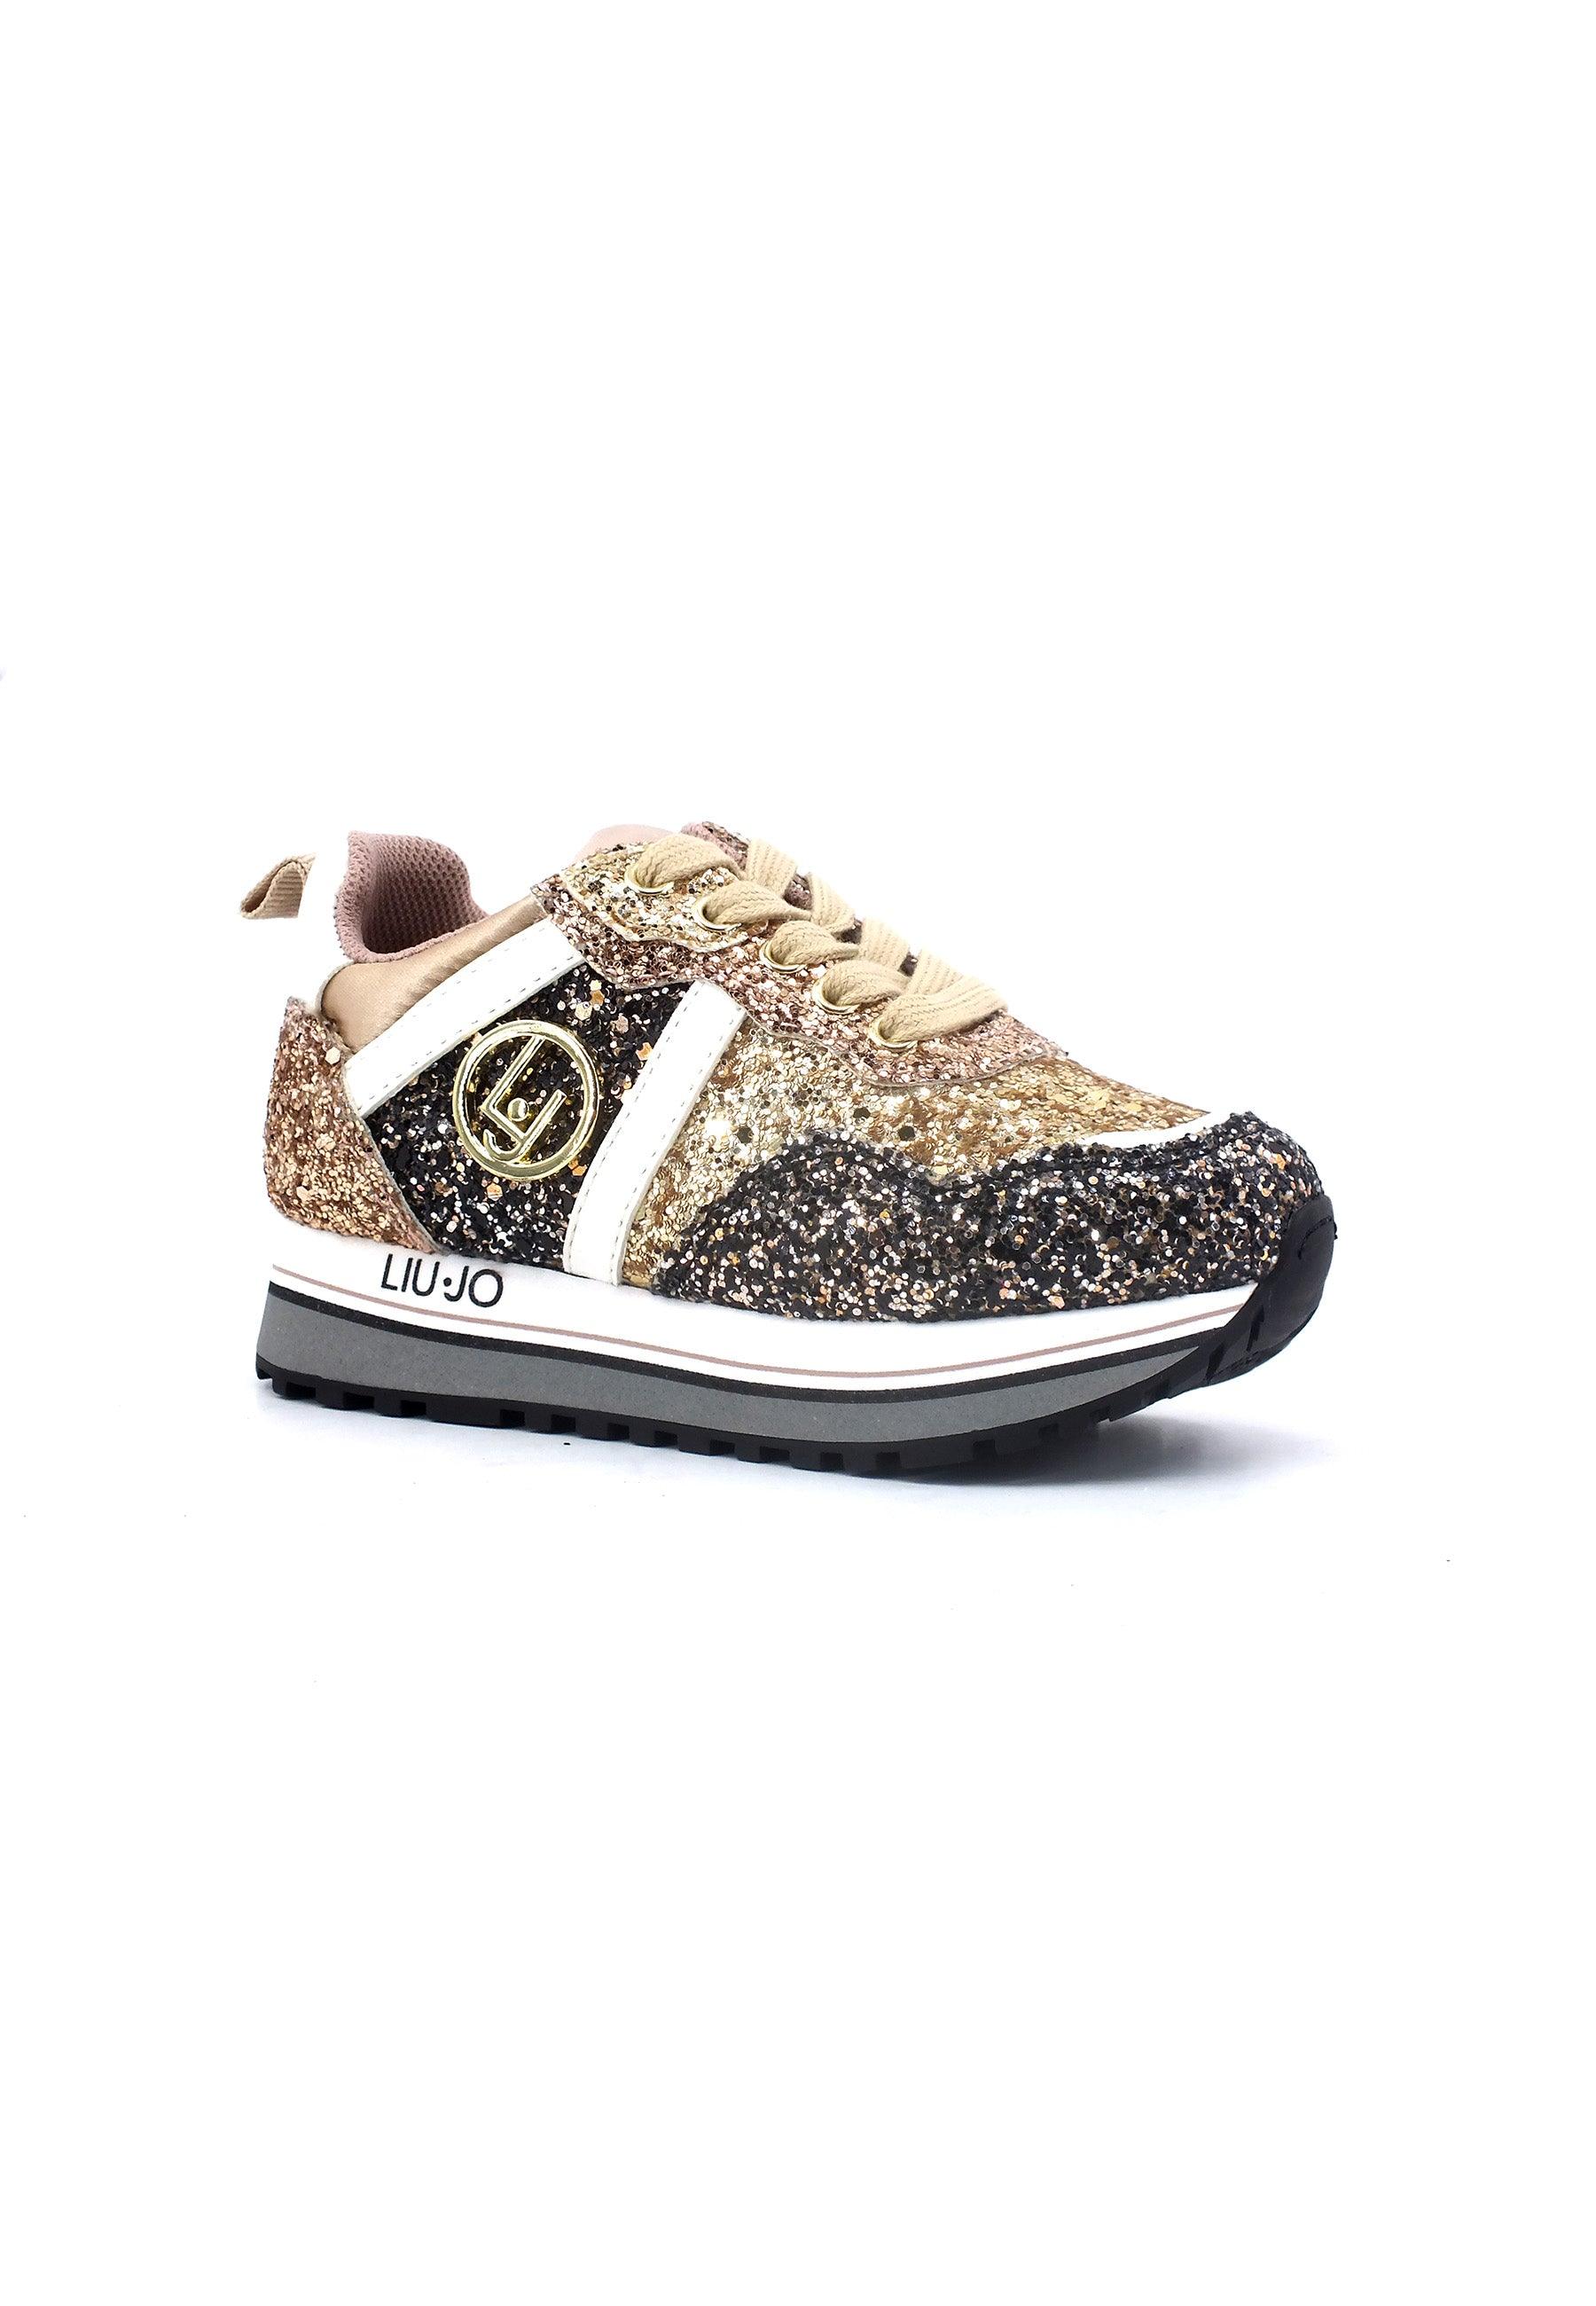 LIU JO Maxi Wonder 604 Sneaker Bimba Gold 4F3301TX007 - Sandrini Calzature e Abbigliamento